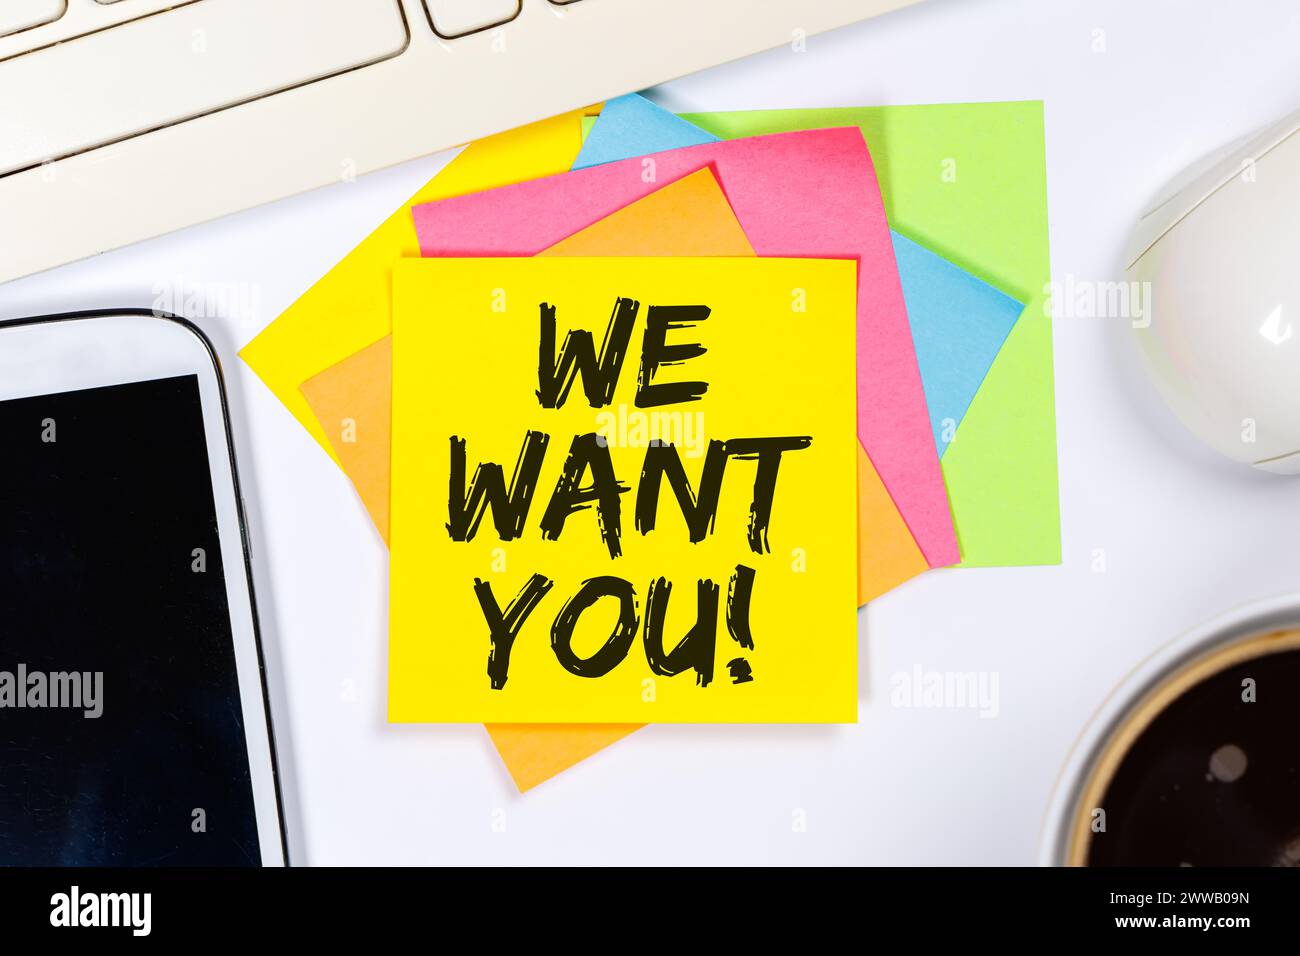 Nous voulons que vous emplois, emploi travail recrutement employés concept d'entreprise de carrière sur un travail de bureau Banque D'Images